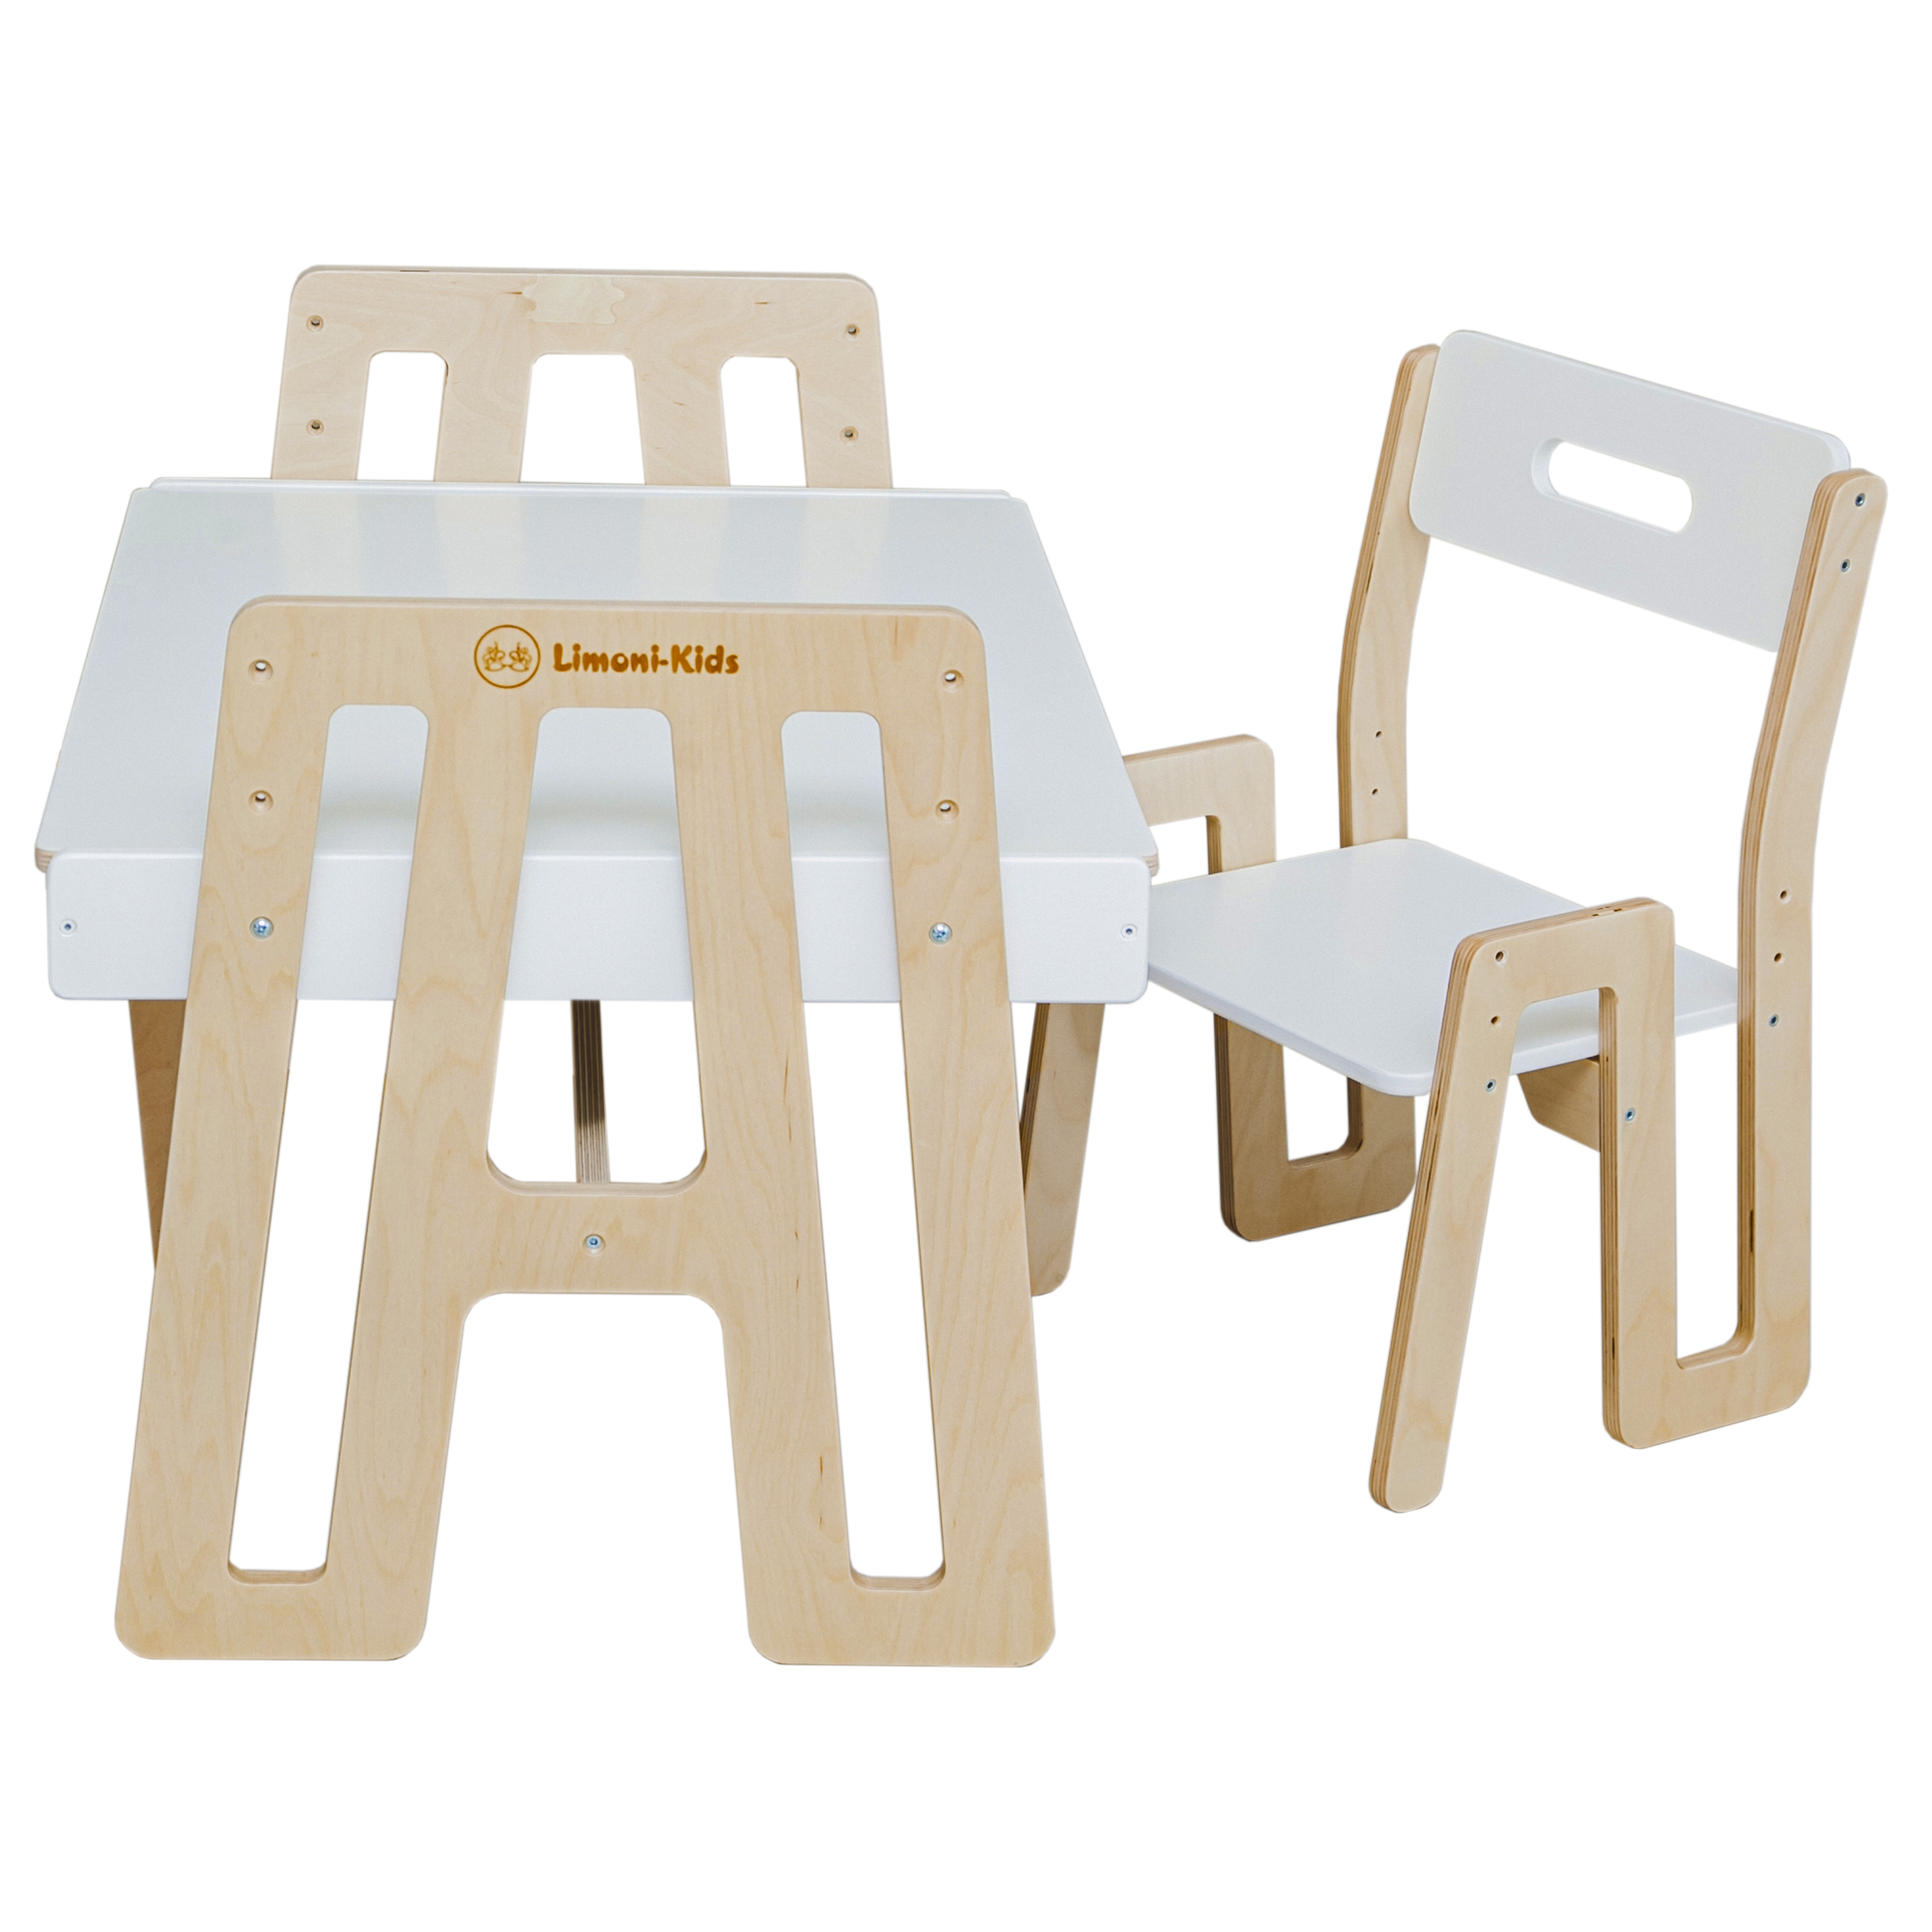 фото Детский стол и стул limoni-kids растущий набор с грифельной доской и контейнерами арт.0272